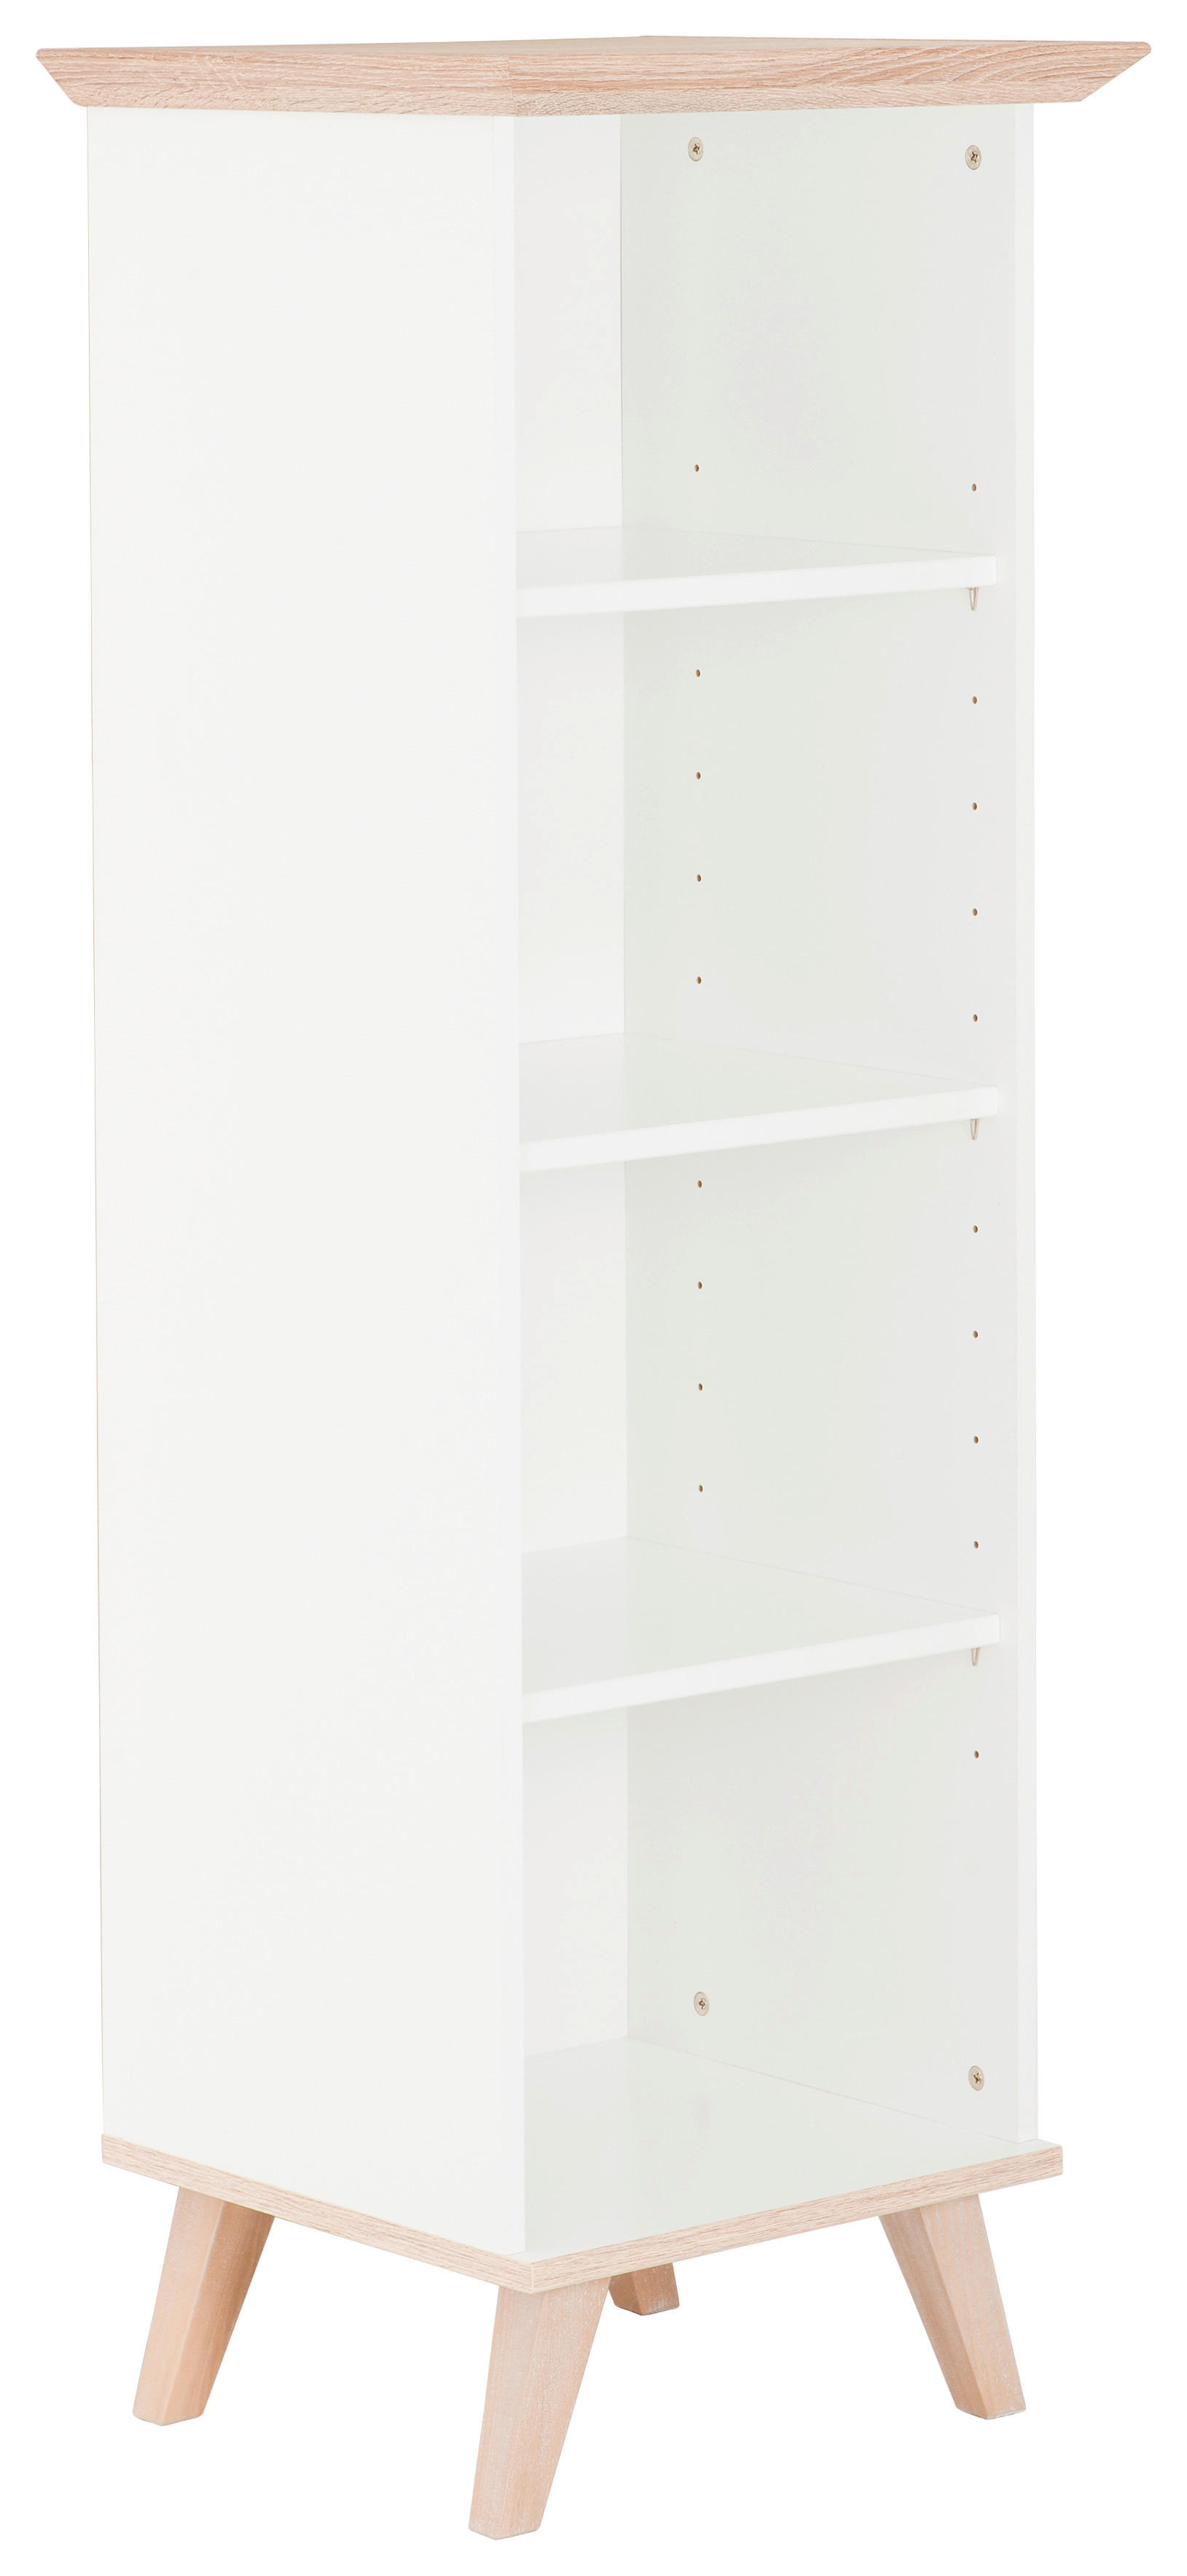 REGAL Weiß, Eichefarben  - Eichefarben/Weiß, Design, Holzwerkstoff (50/144/45cm) - Livetastic